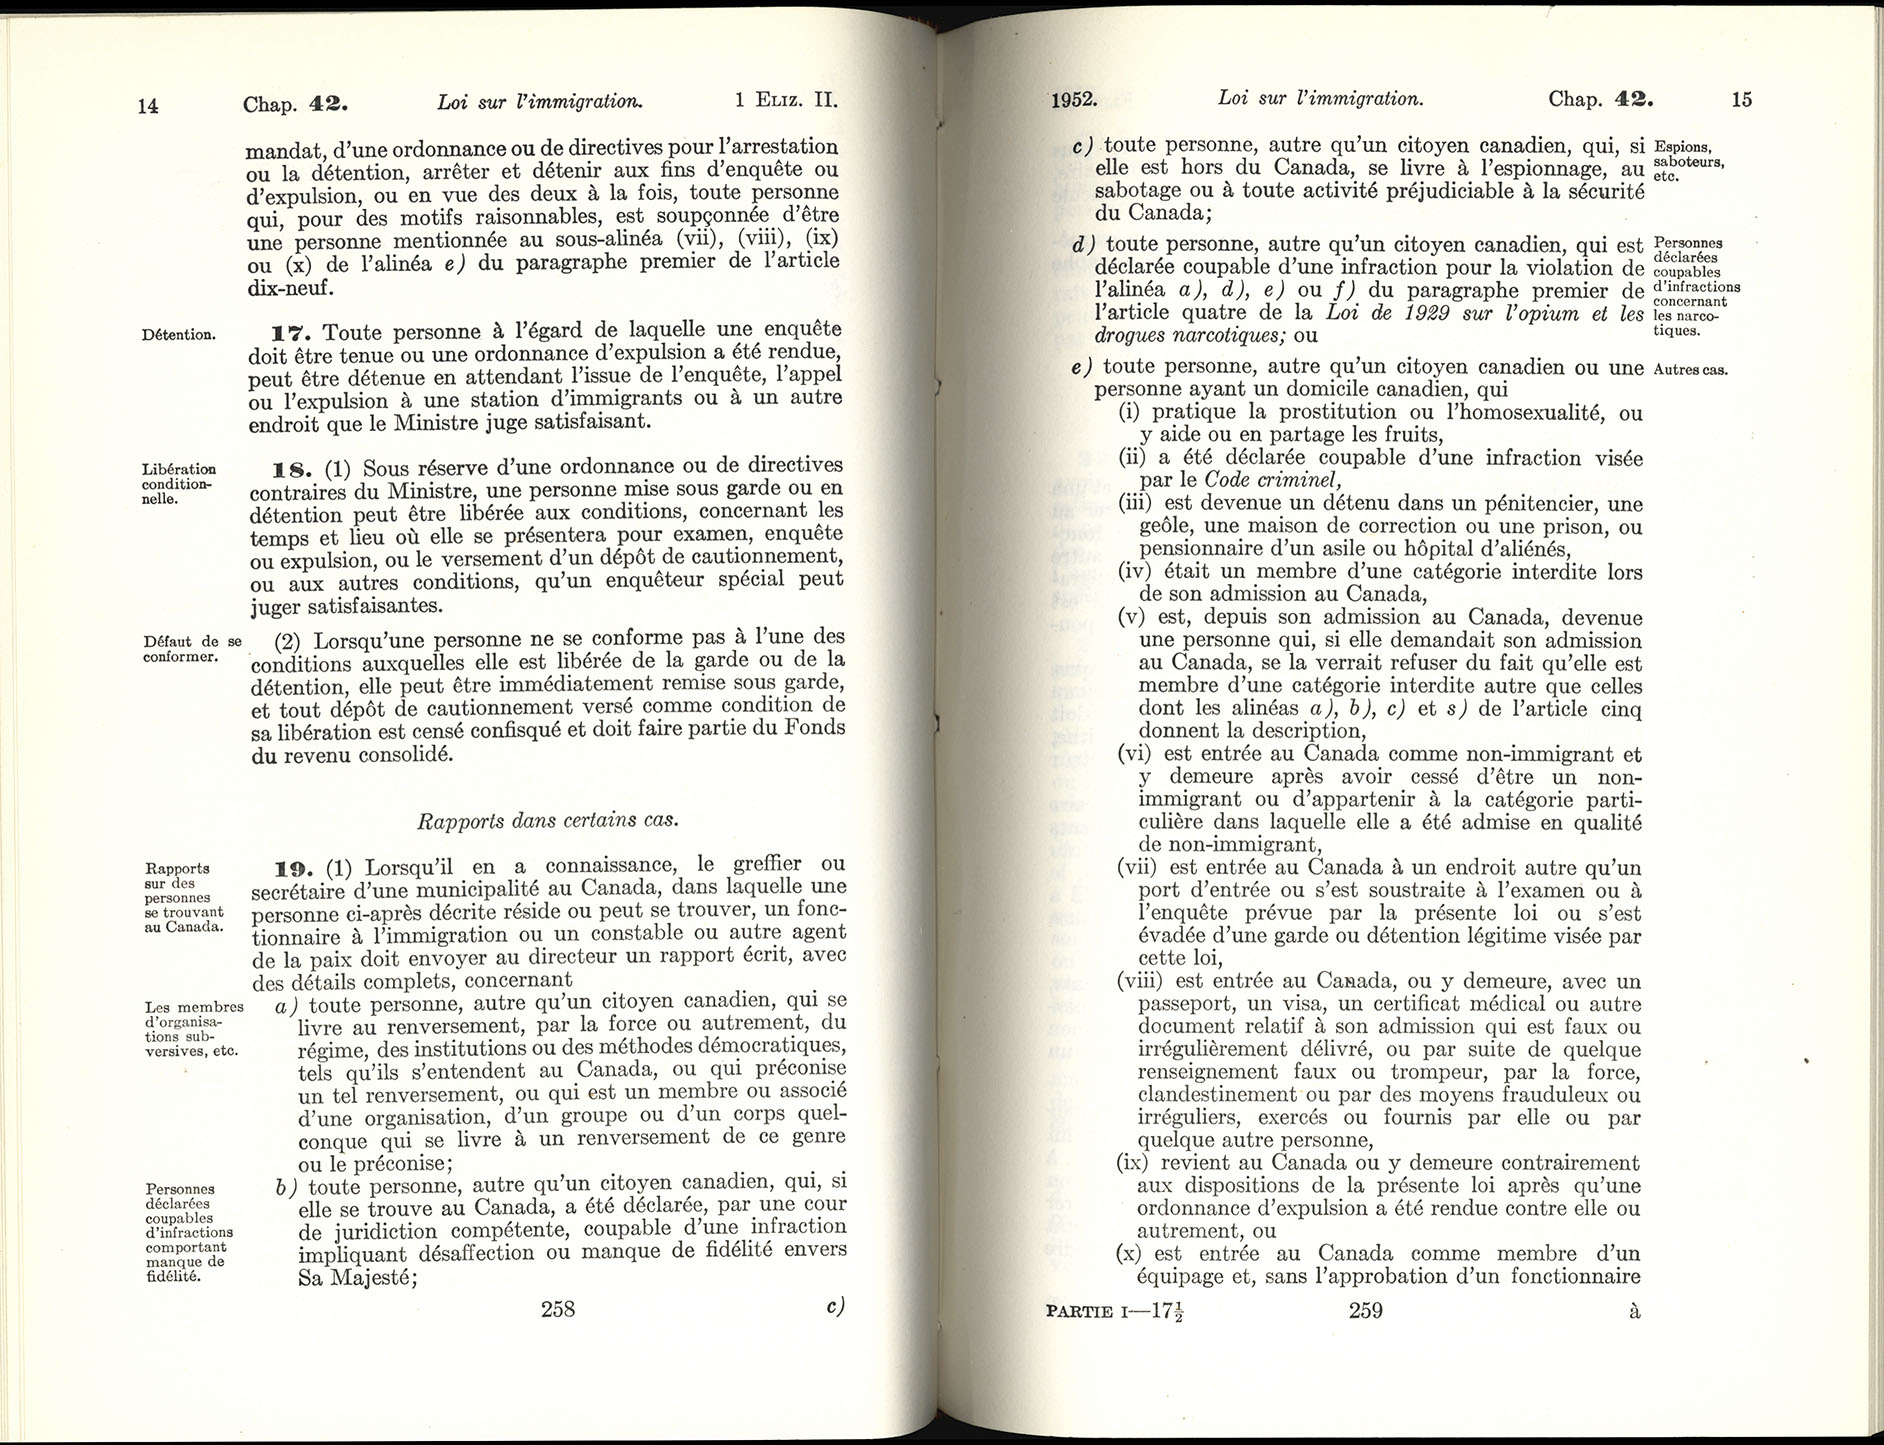 Chap 42 Page 258, 259 Loi sur l’immigration, 1952